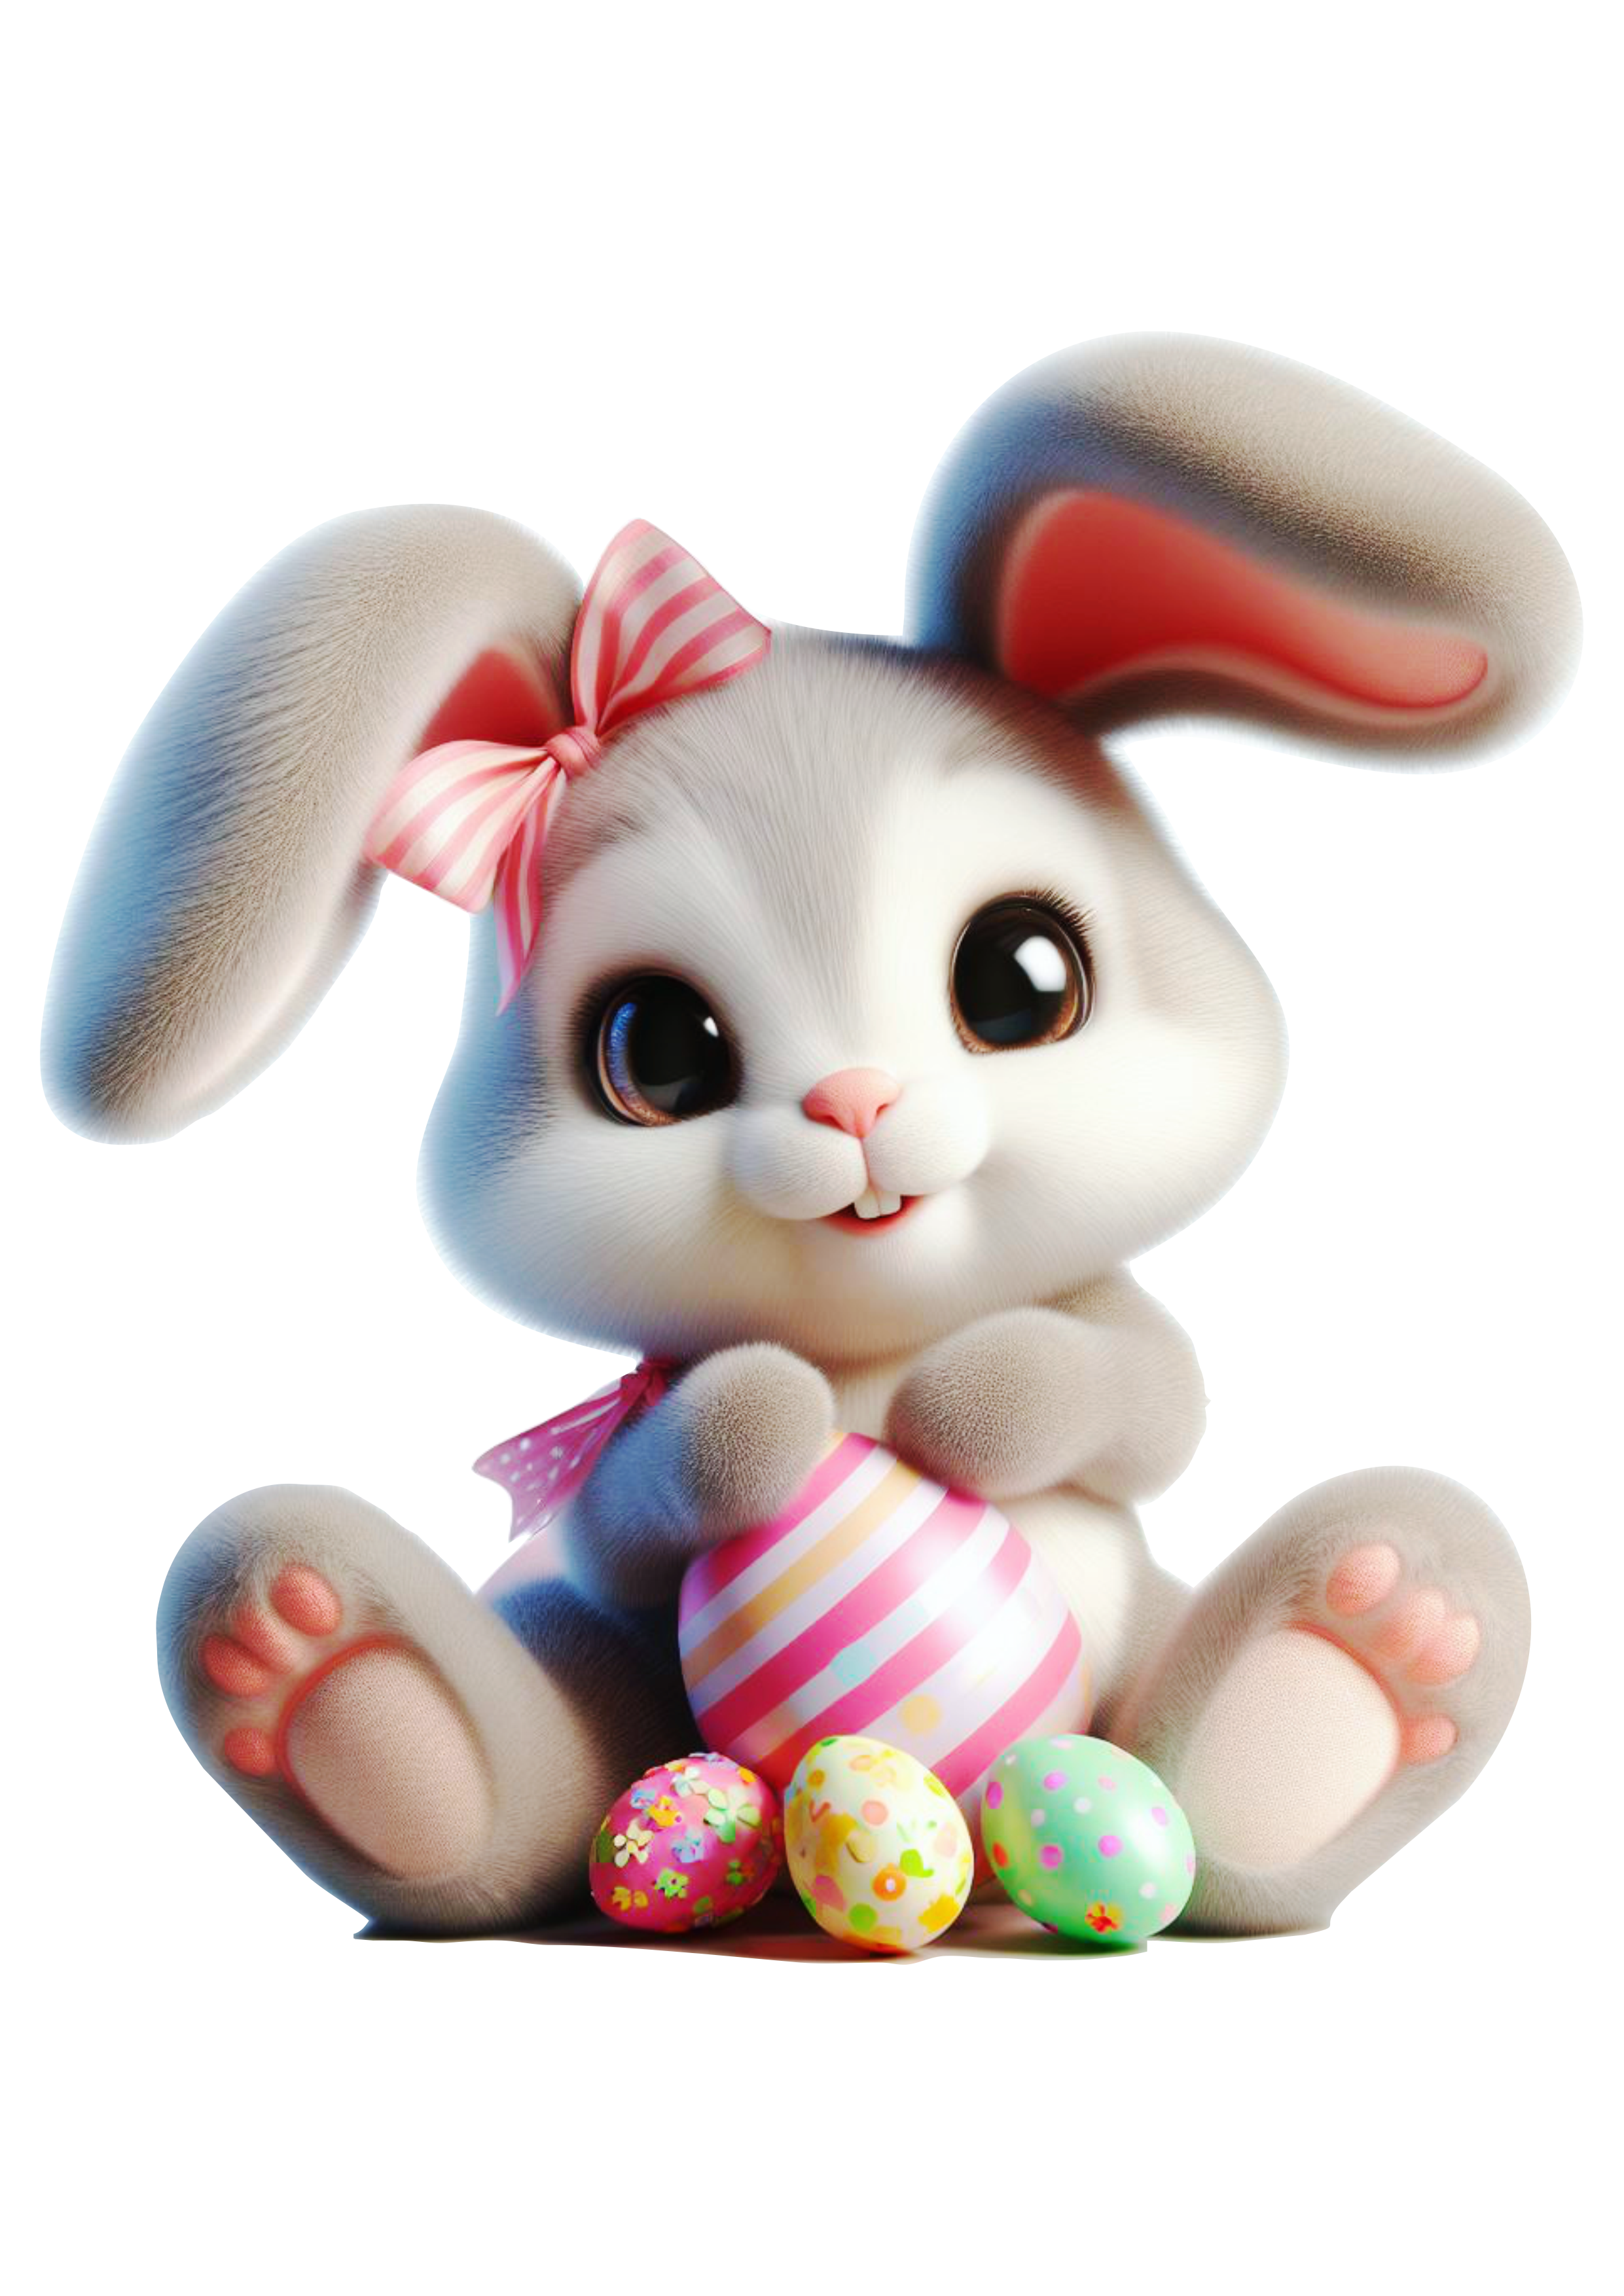 Imagens de páscoa coelhinho fofinho cute decoração ovinhos de chocolate png animação infantil ilustração fundo transparente